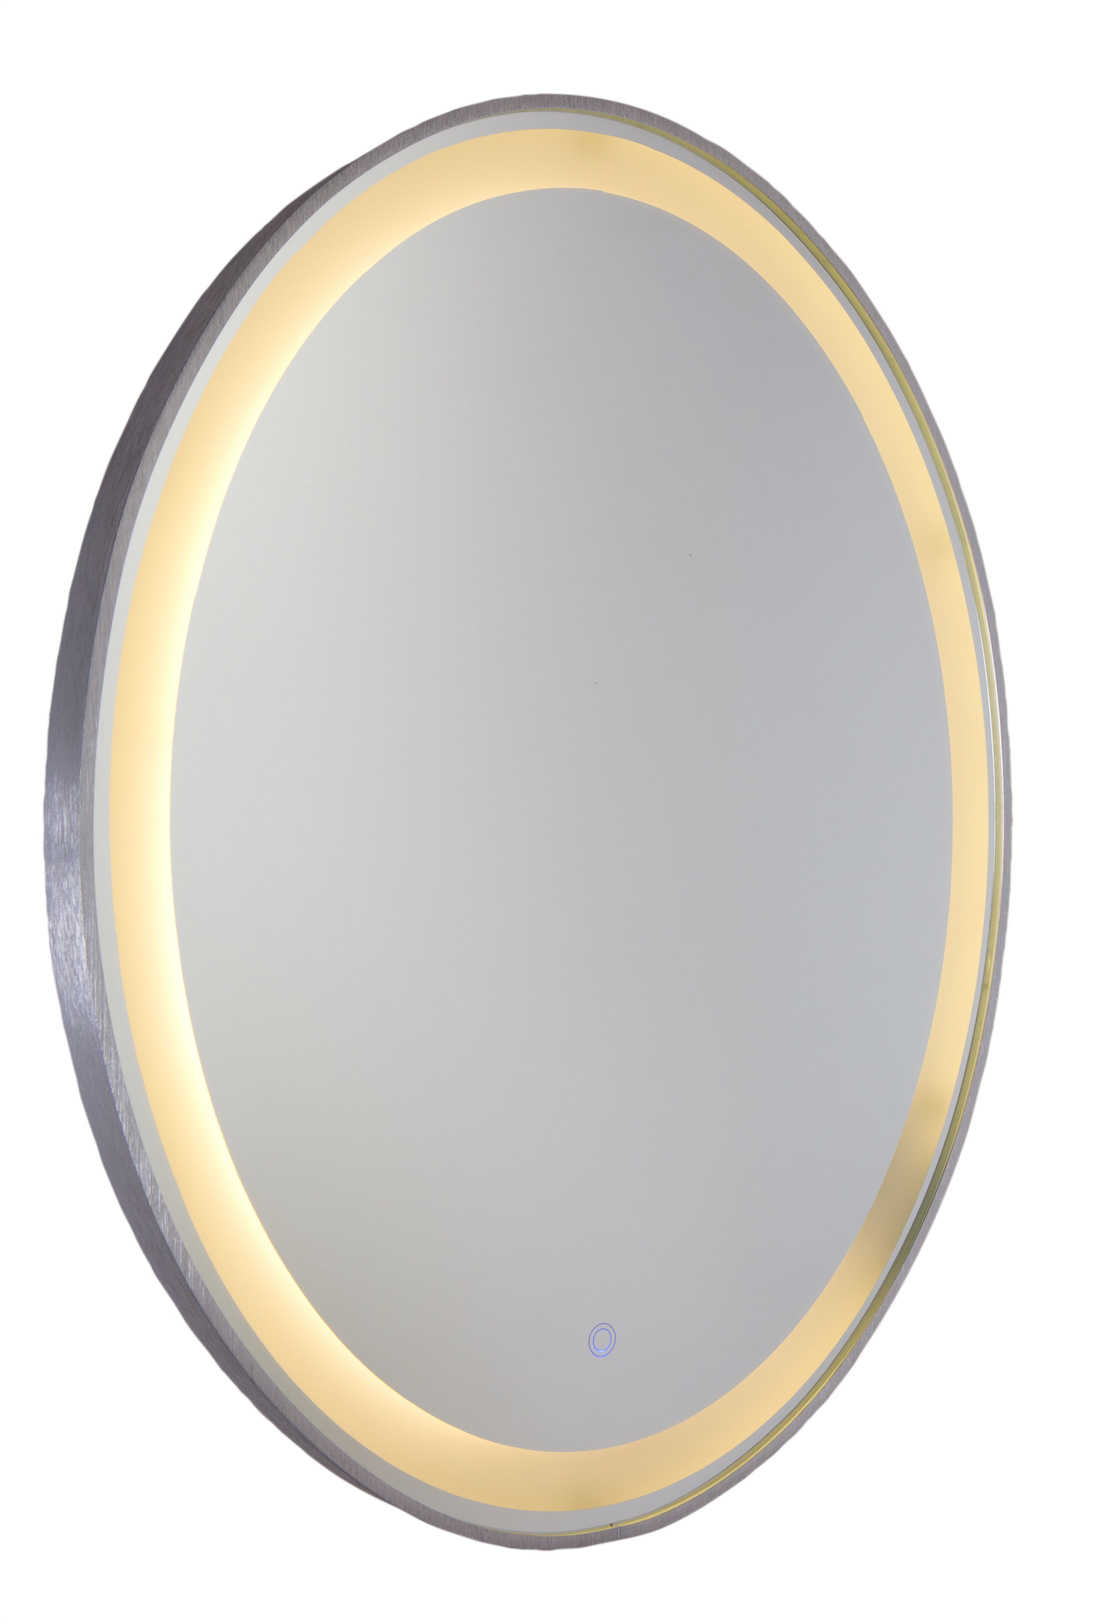 Mirror oval Modern Artcraft AM300